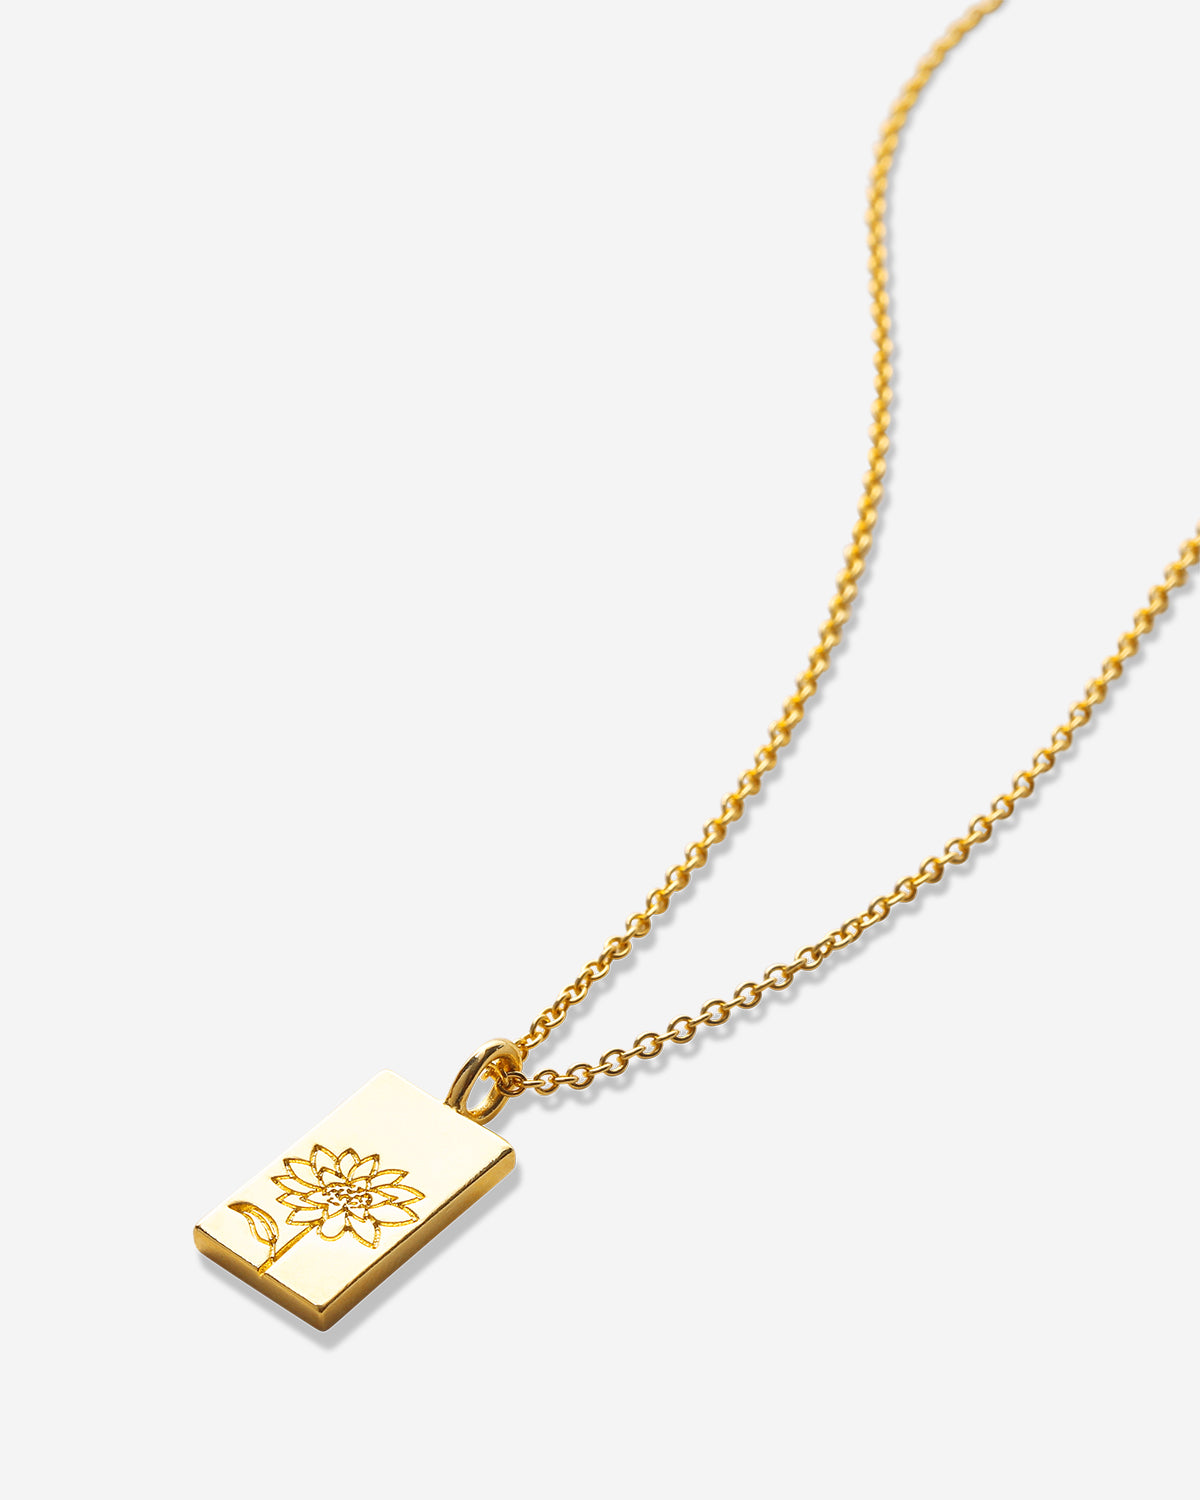 Bryan Anthonys Chasing Light Gold Necklace Macro Shot